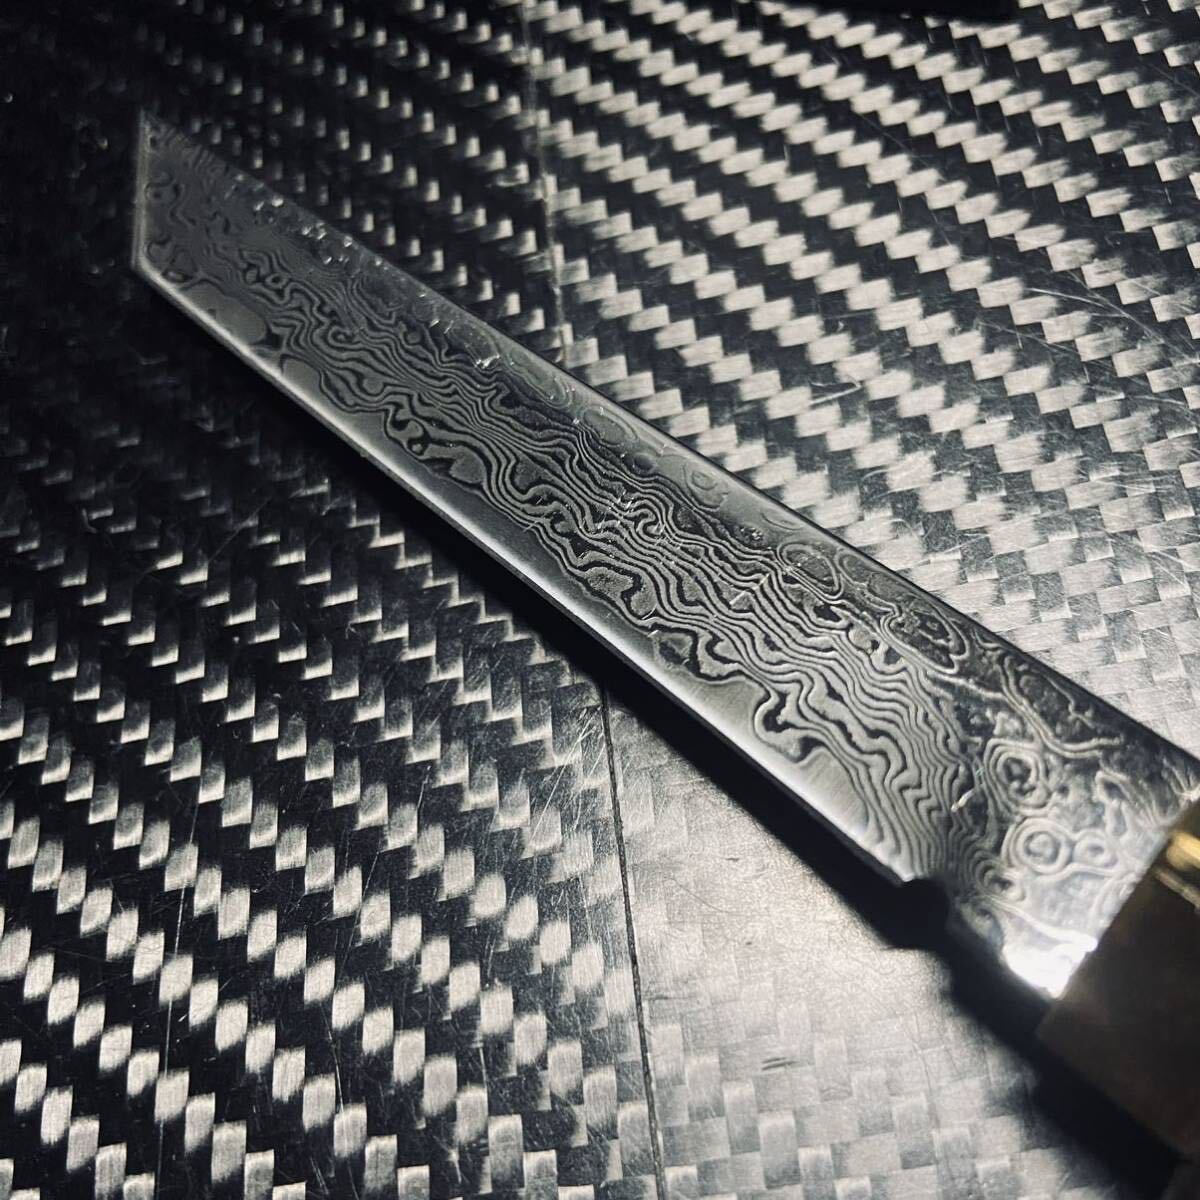 黑檀木製 短刀 和風ナイフ ダマスカス鋼製 木鞘ナイフ 和式ナイフ 伝統工芸 日本刀型 129g_画像4